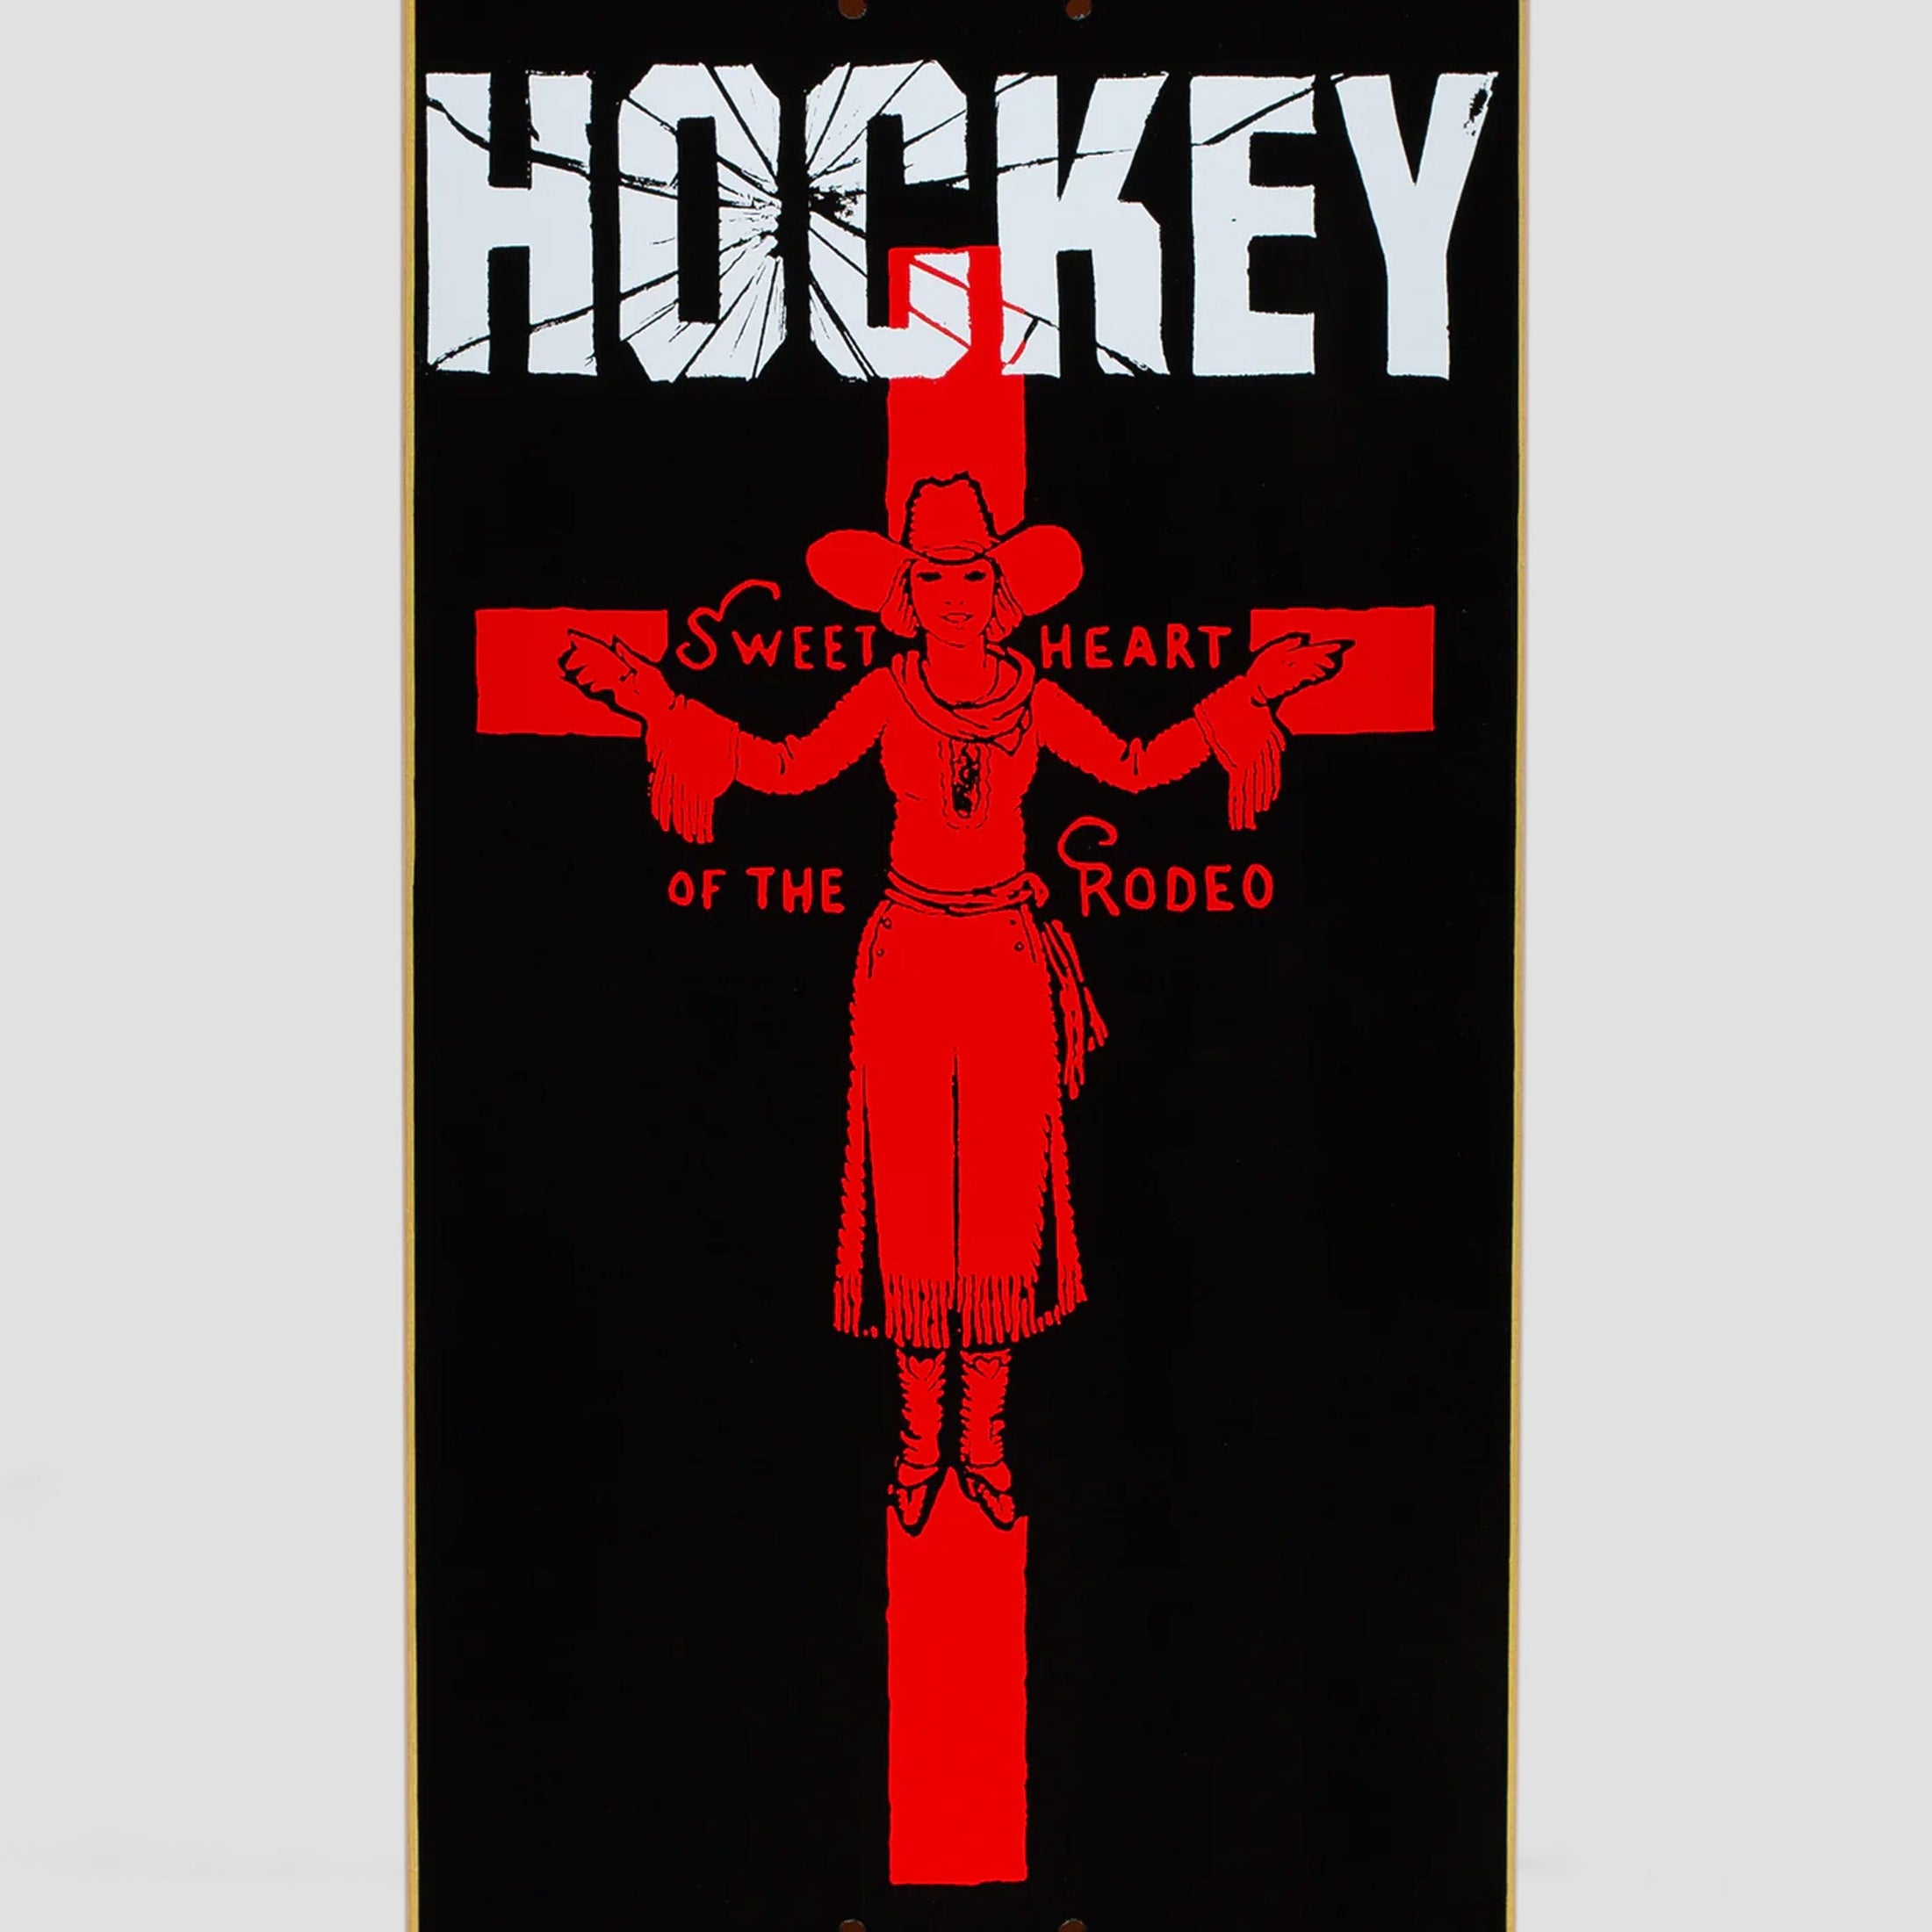 Hockey 8.5 Andrew Allen Sweet Heart Skateboard Deck Black